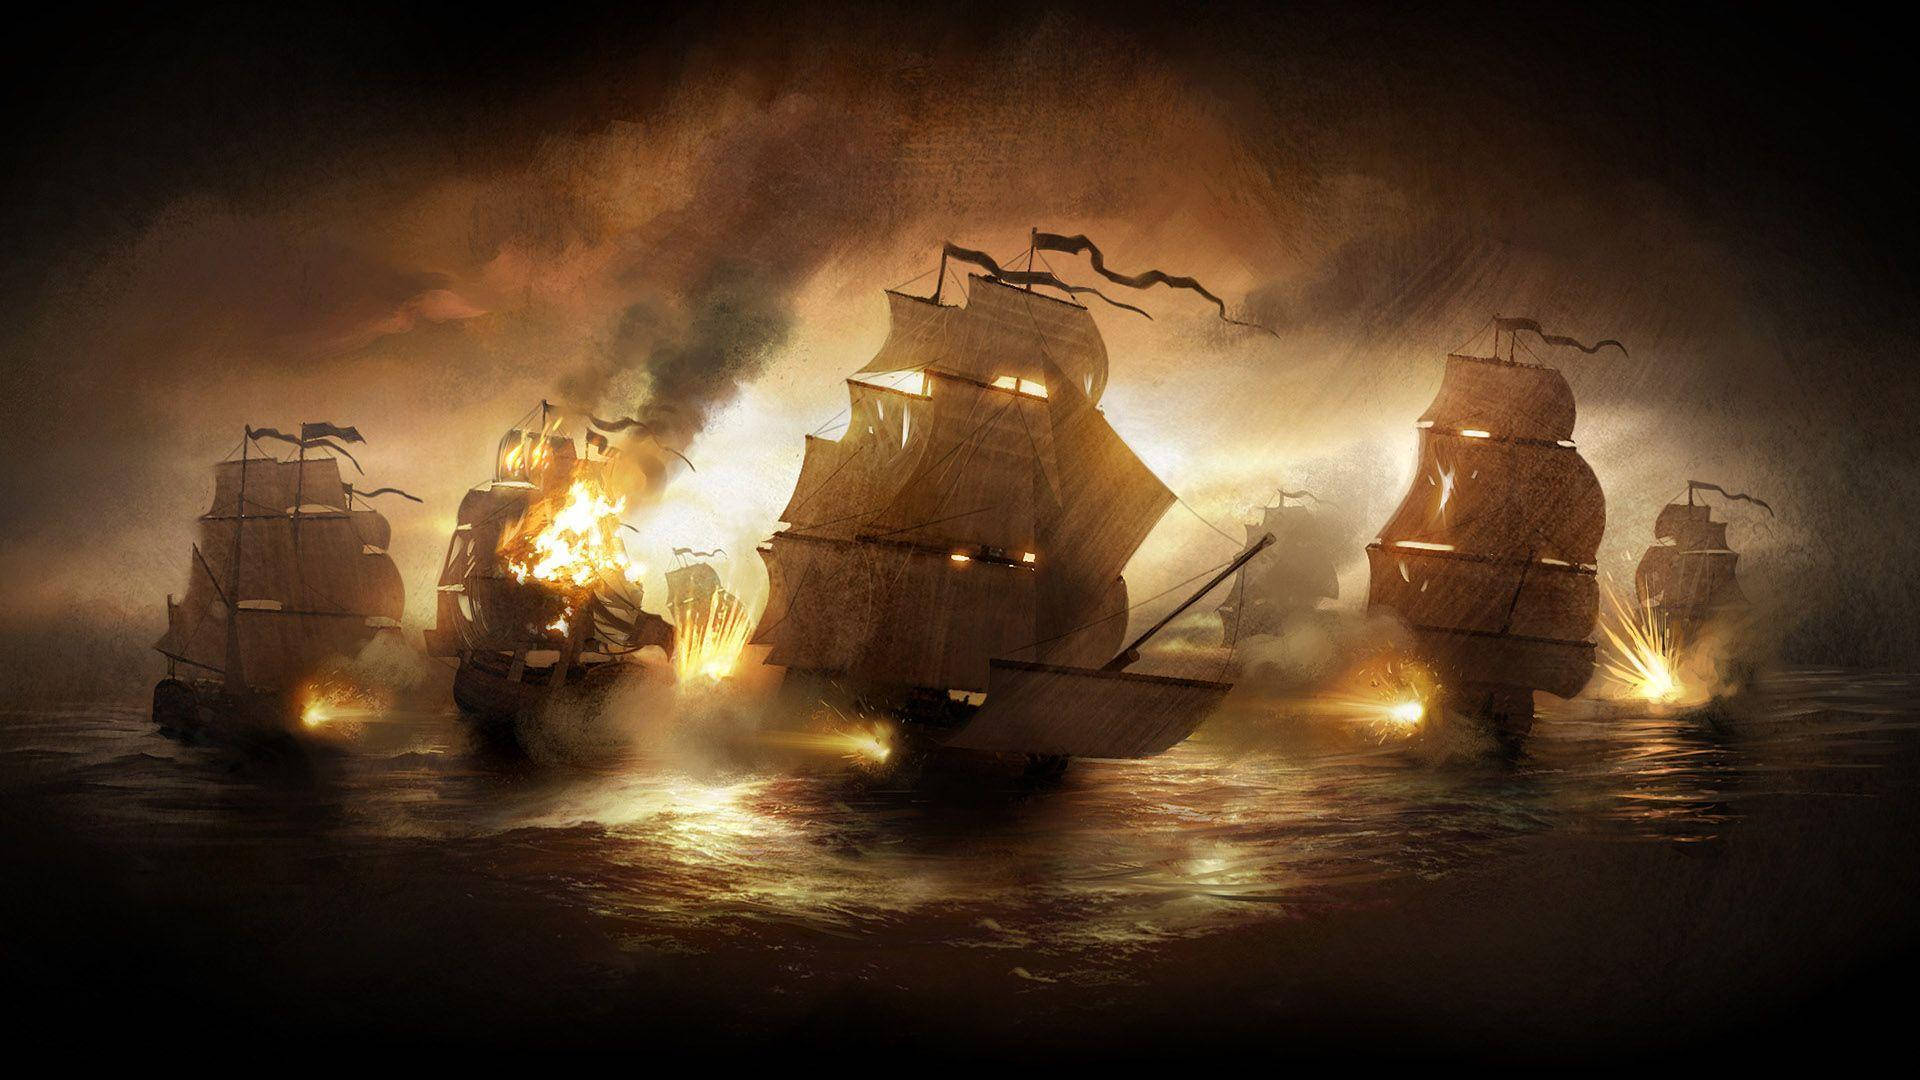 Ambushed Pirate Ships